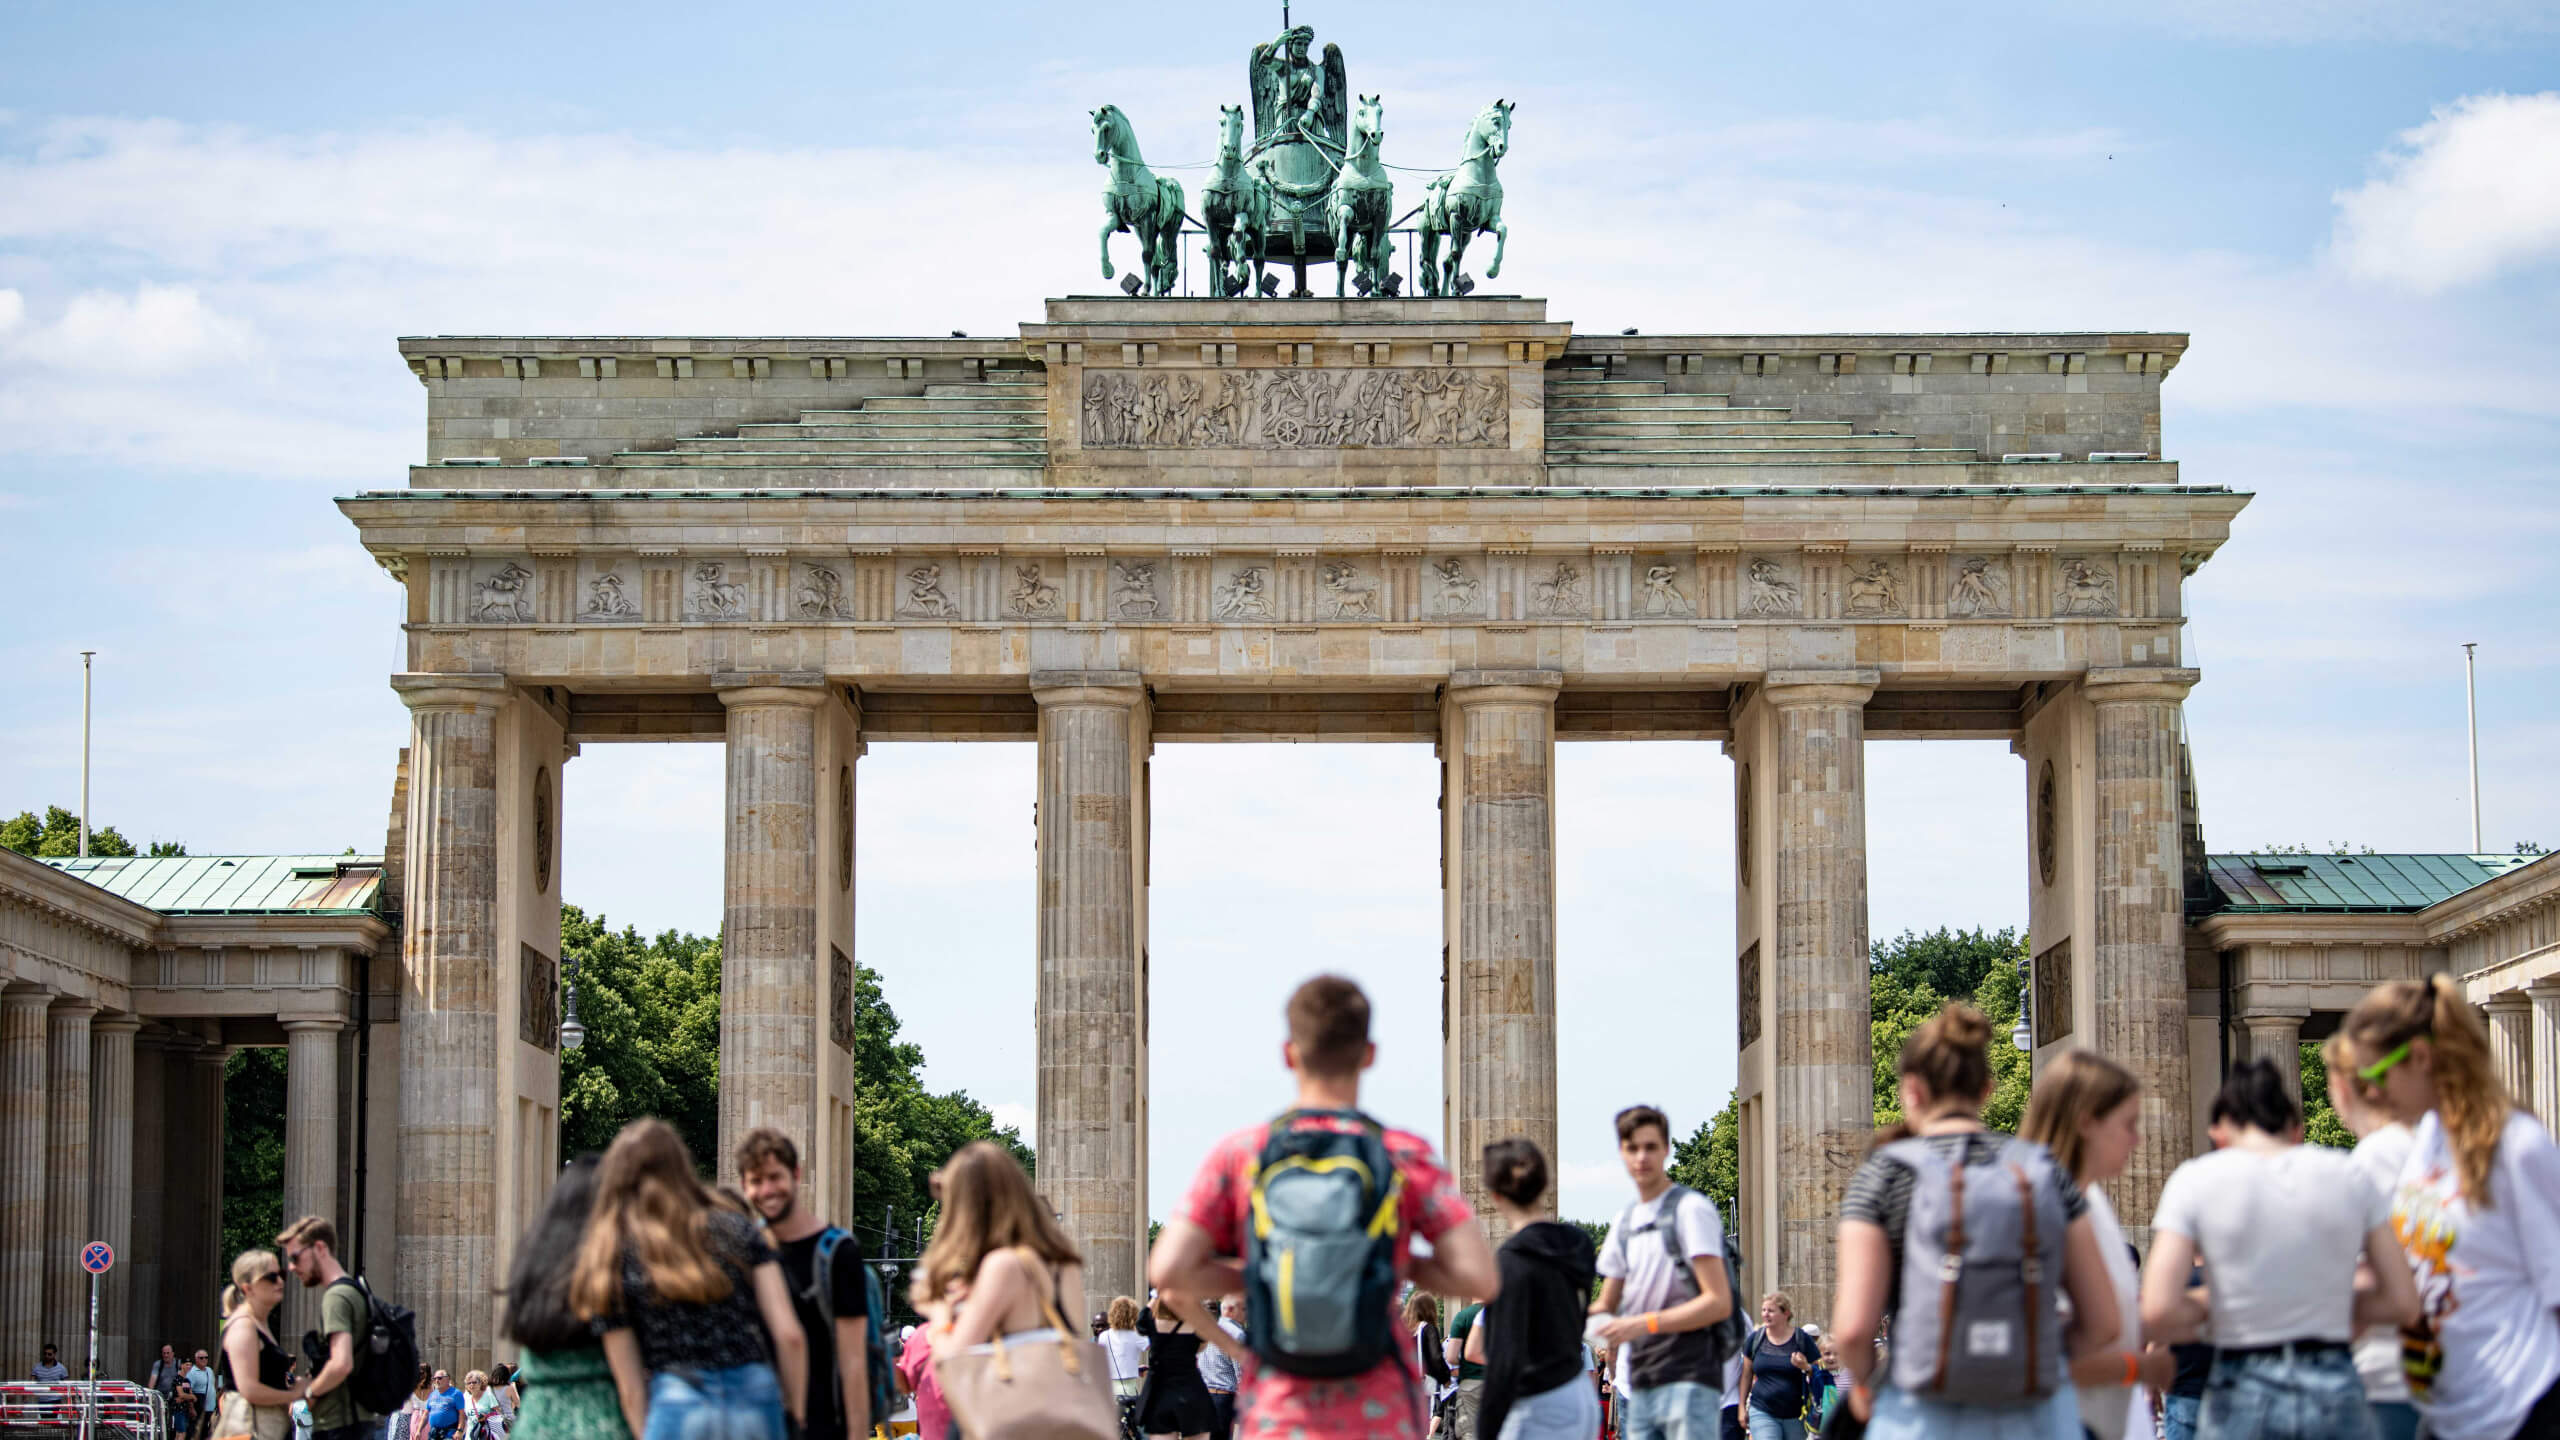 Das Brandenburger Tor in Berlin ist eine beliebte Touristenattraktion, die Jahr für Jahr Menschen anzieht. Beim Thema Sicherheit bescheinigt ein Tourismusbericht des Weltwirtschaftsforums Deutschland jedoch Defizite.